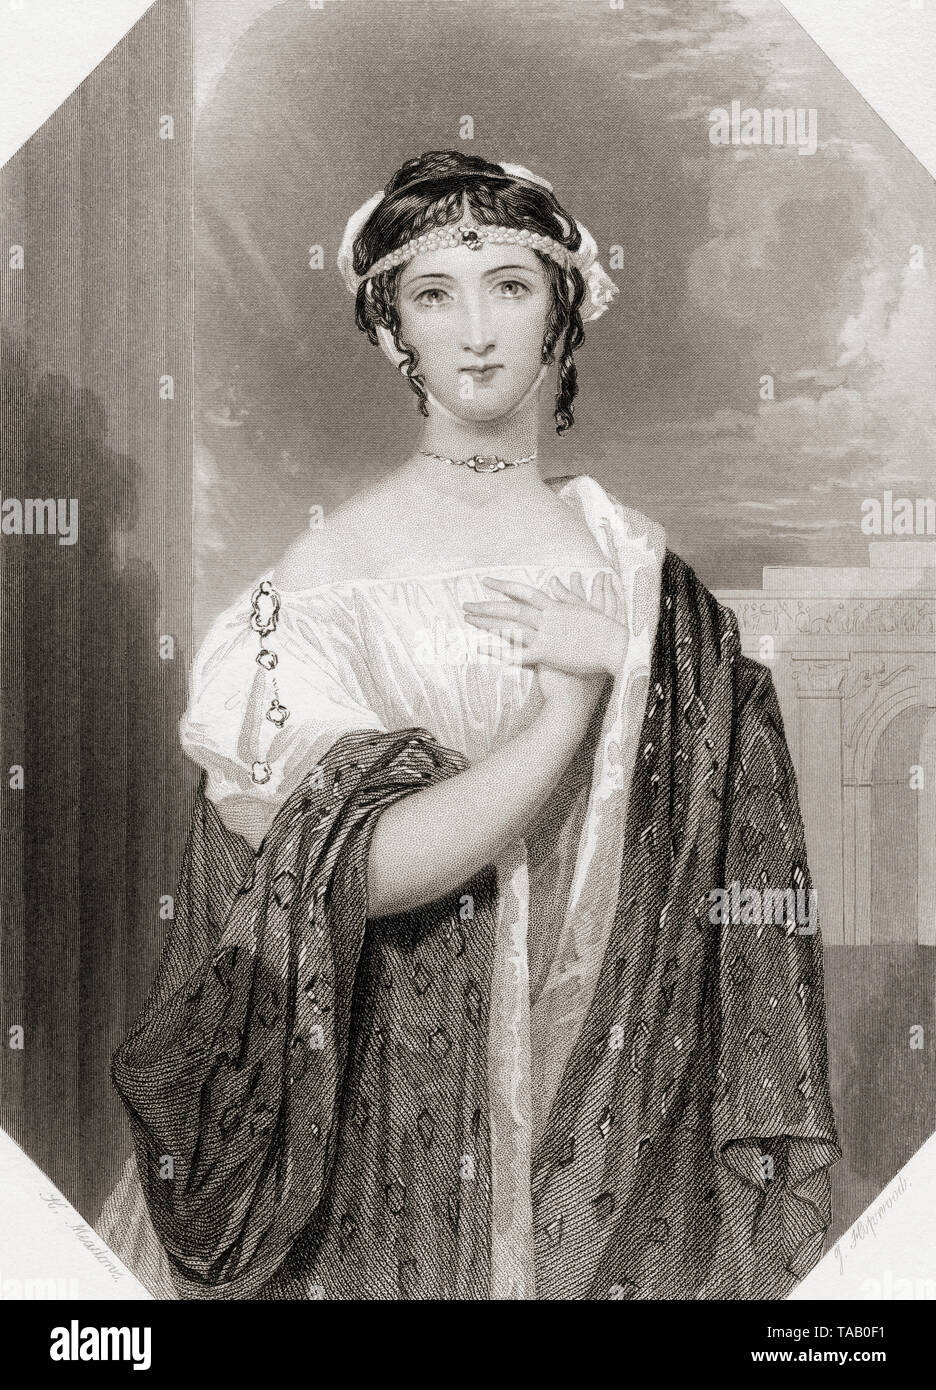 Virgilia. Personnage féminin principal de la pièce de Shakespeare Coriolanus. Galerie de Shakespeare, publié c.1840. Banque D'Images